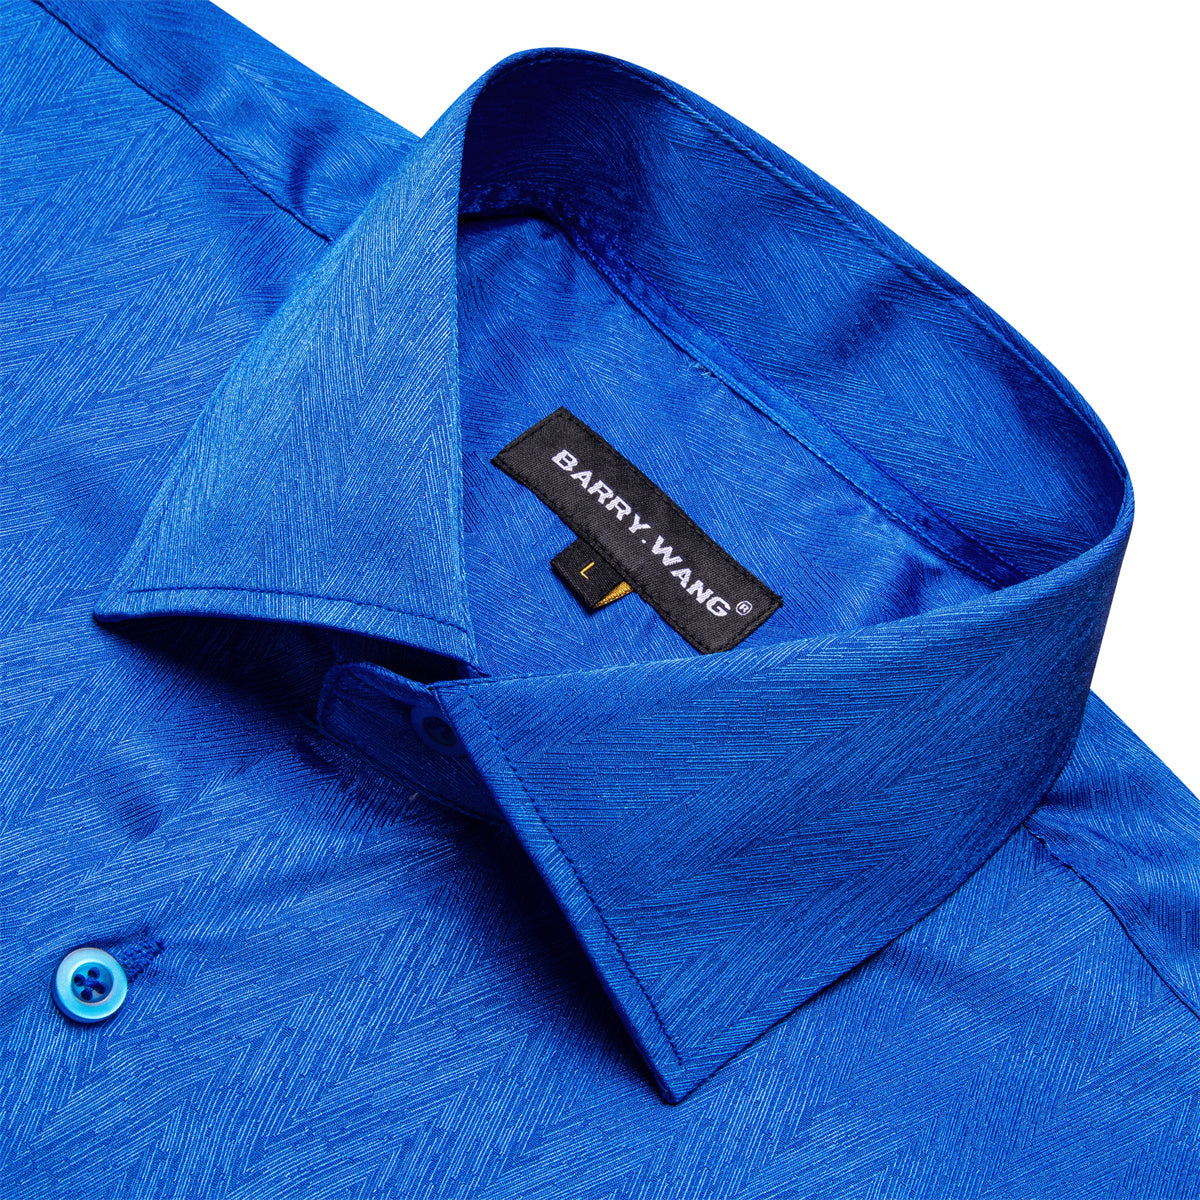 Barry.wang Button Down Shirt Cobalt Blue Solid Silk Men's long sleeve Shirt